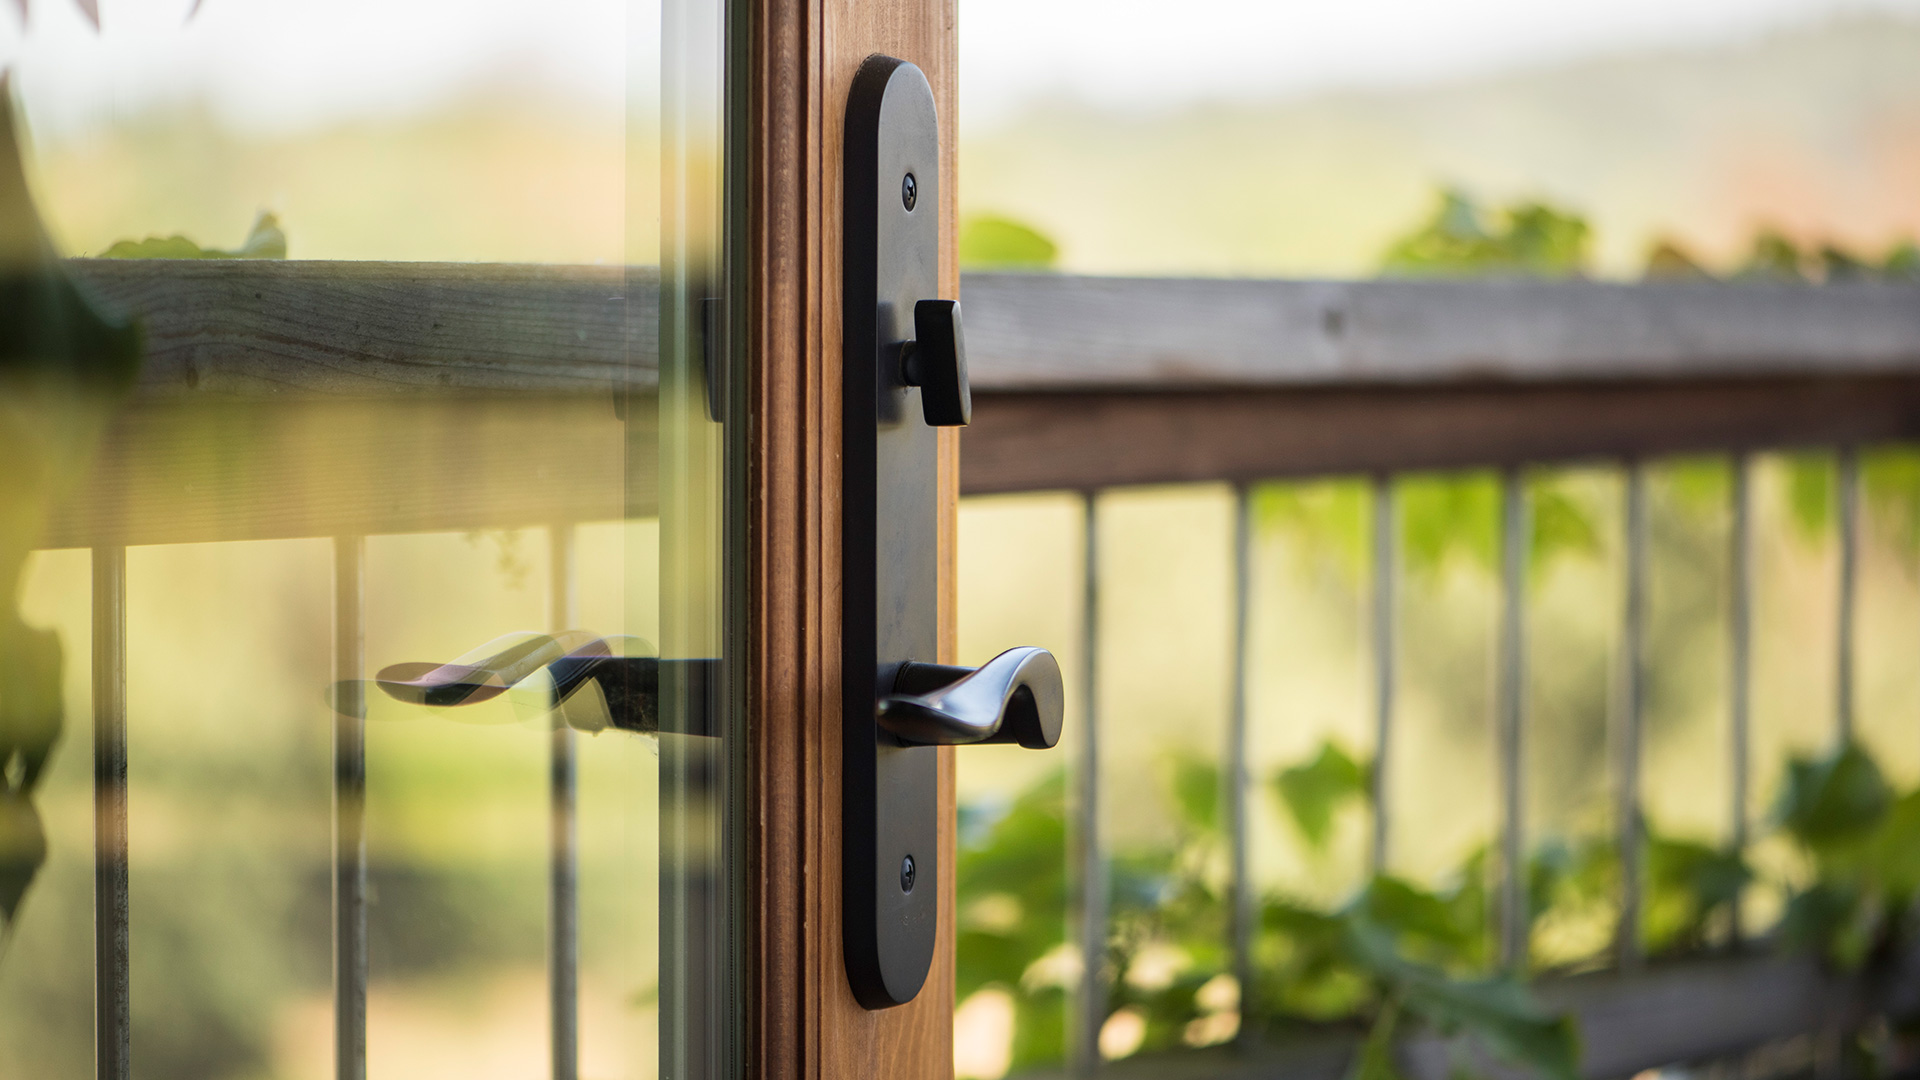 Closeup of handle on wooden frame of glass door, railing and plants reflected in door window.